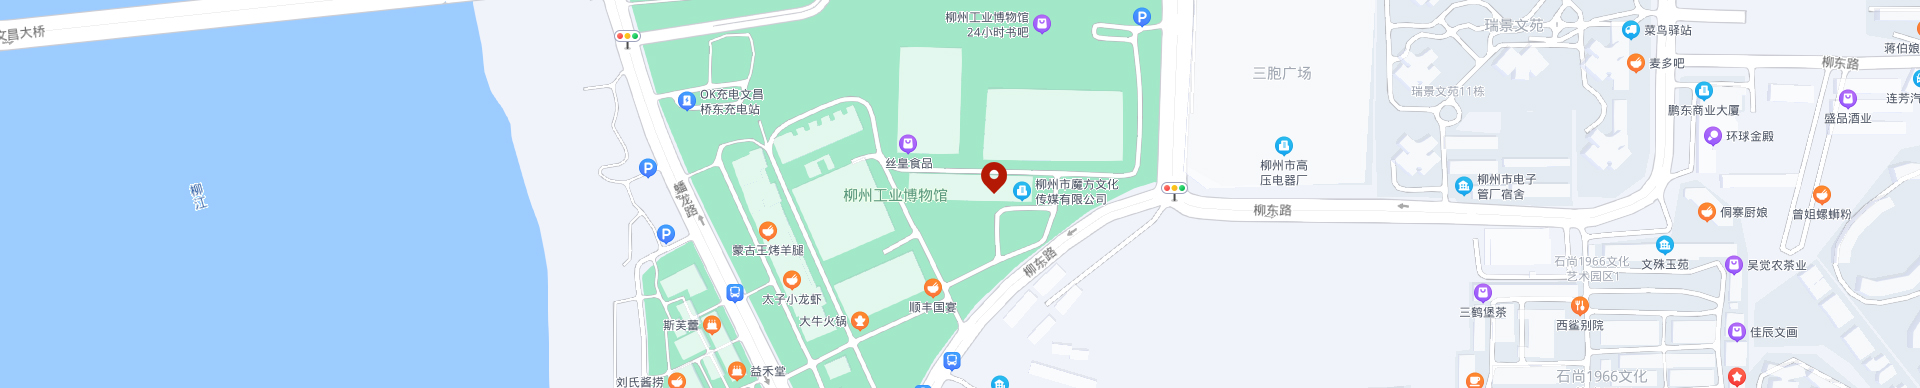 武漢視頻網絡監控安裝公司地圖